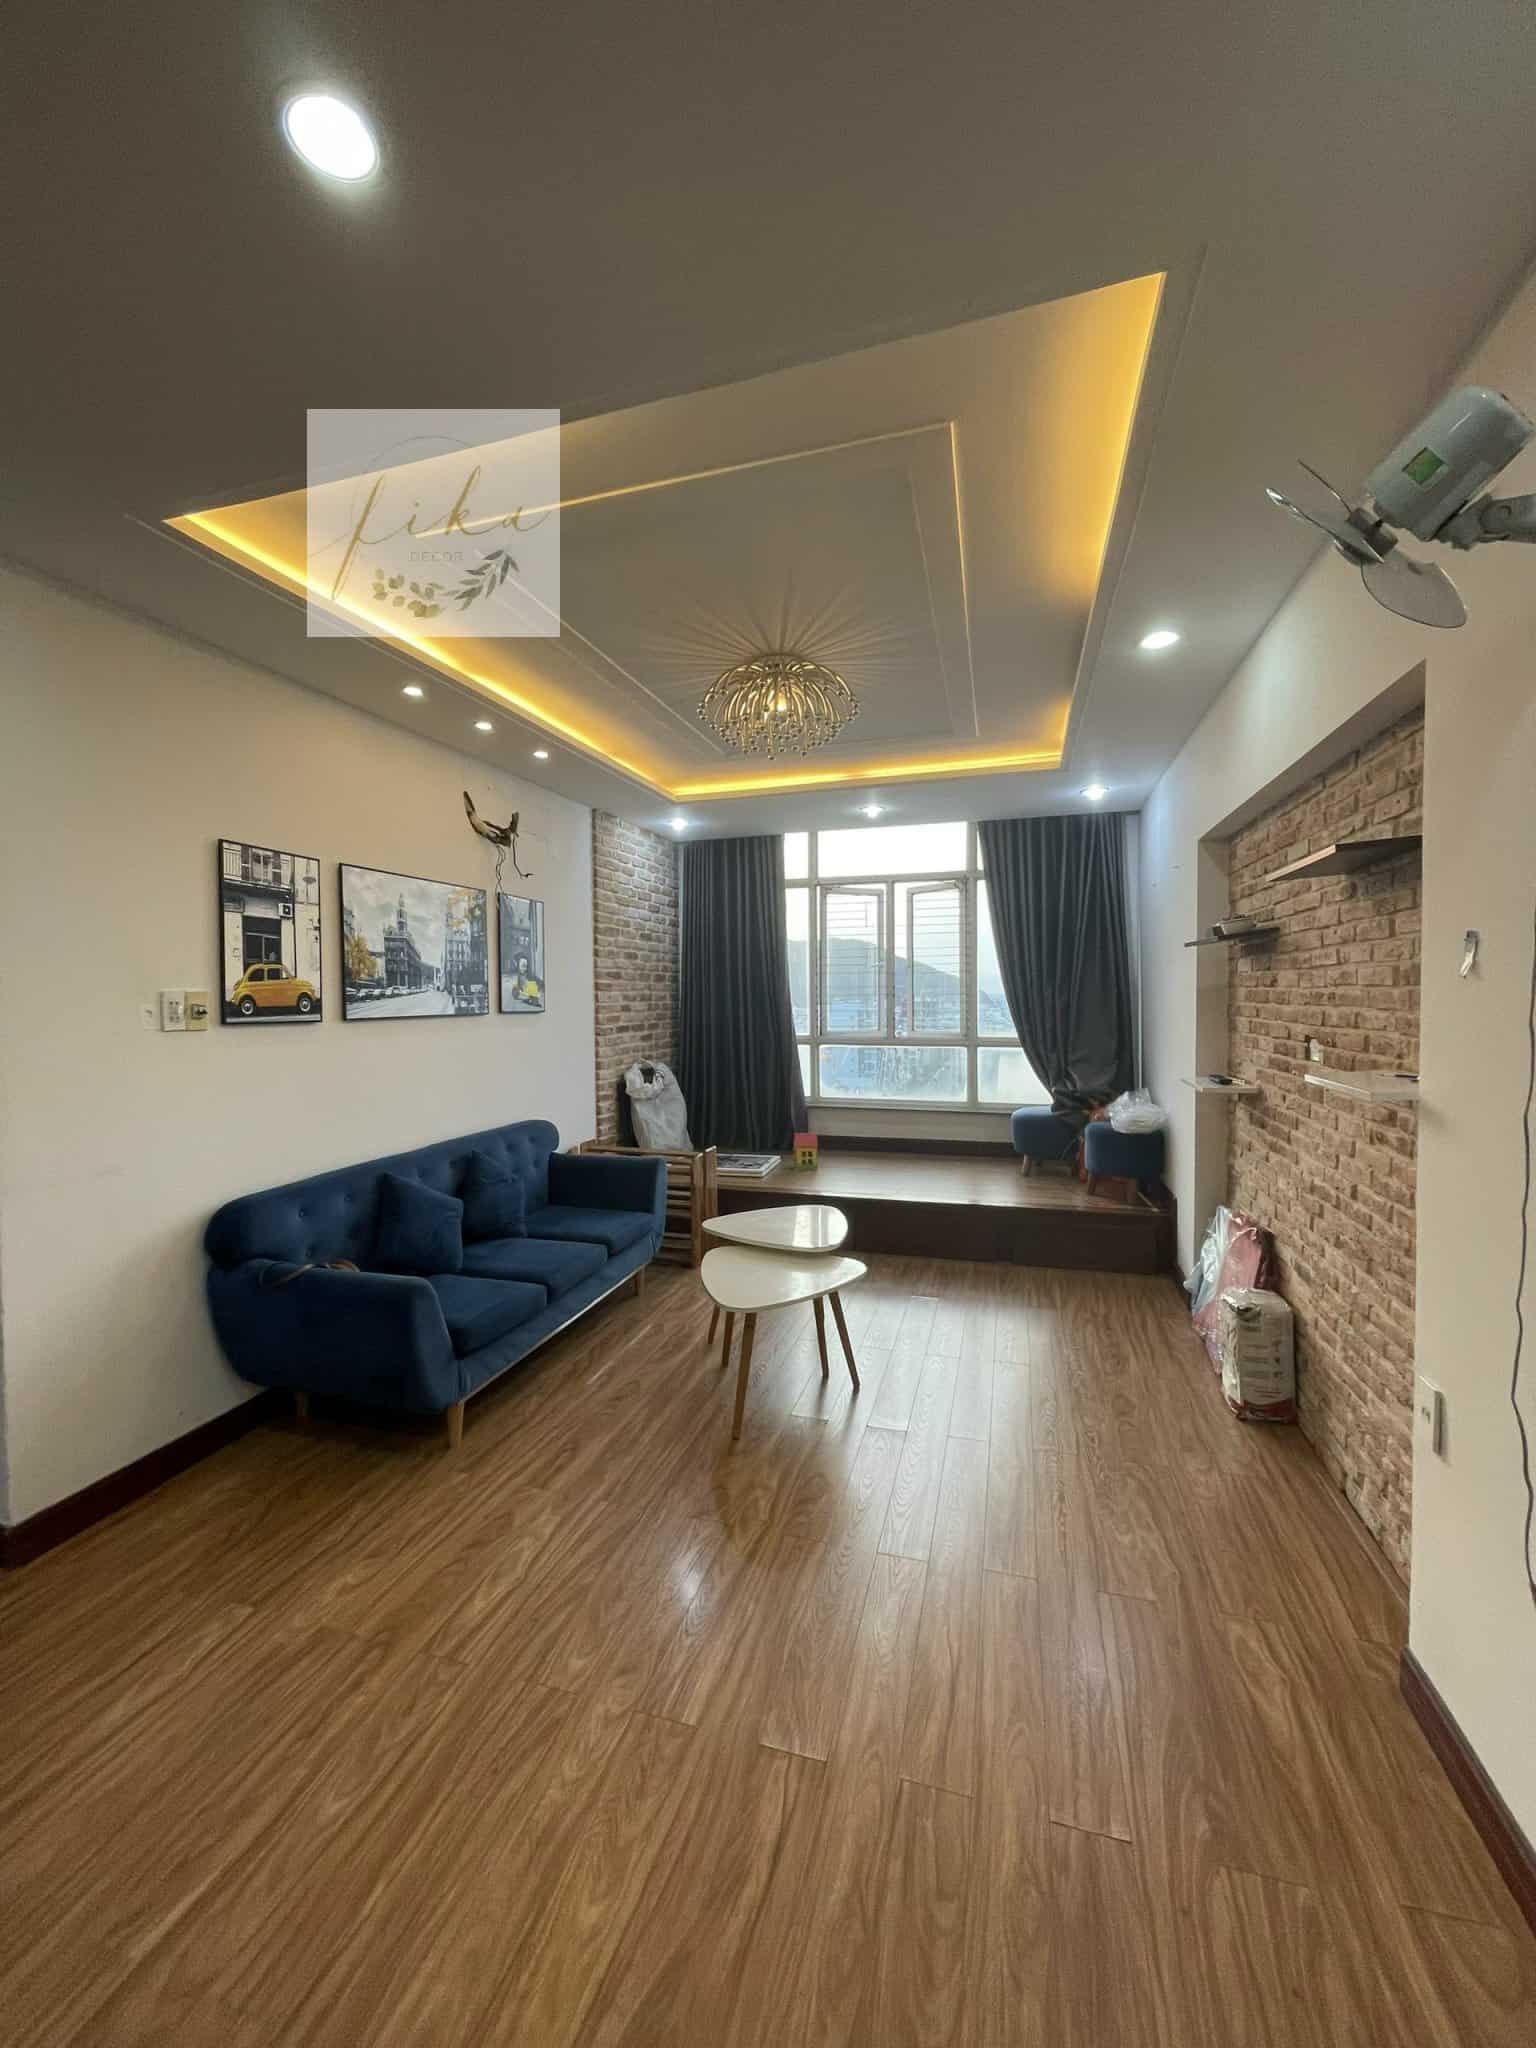 [3/2022] Dự án cải tạo căn hộ cho thuê du lịch tại Quy Nhơn - Before & After 8